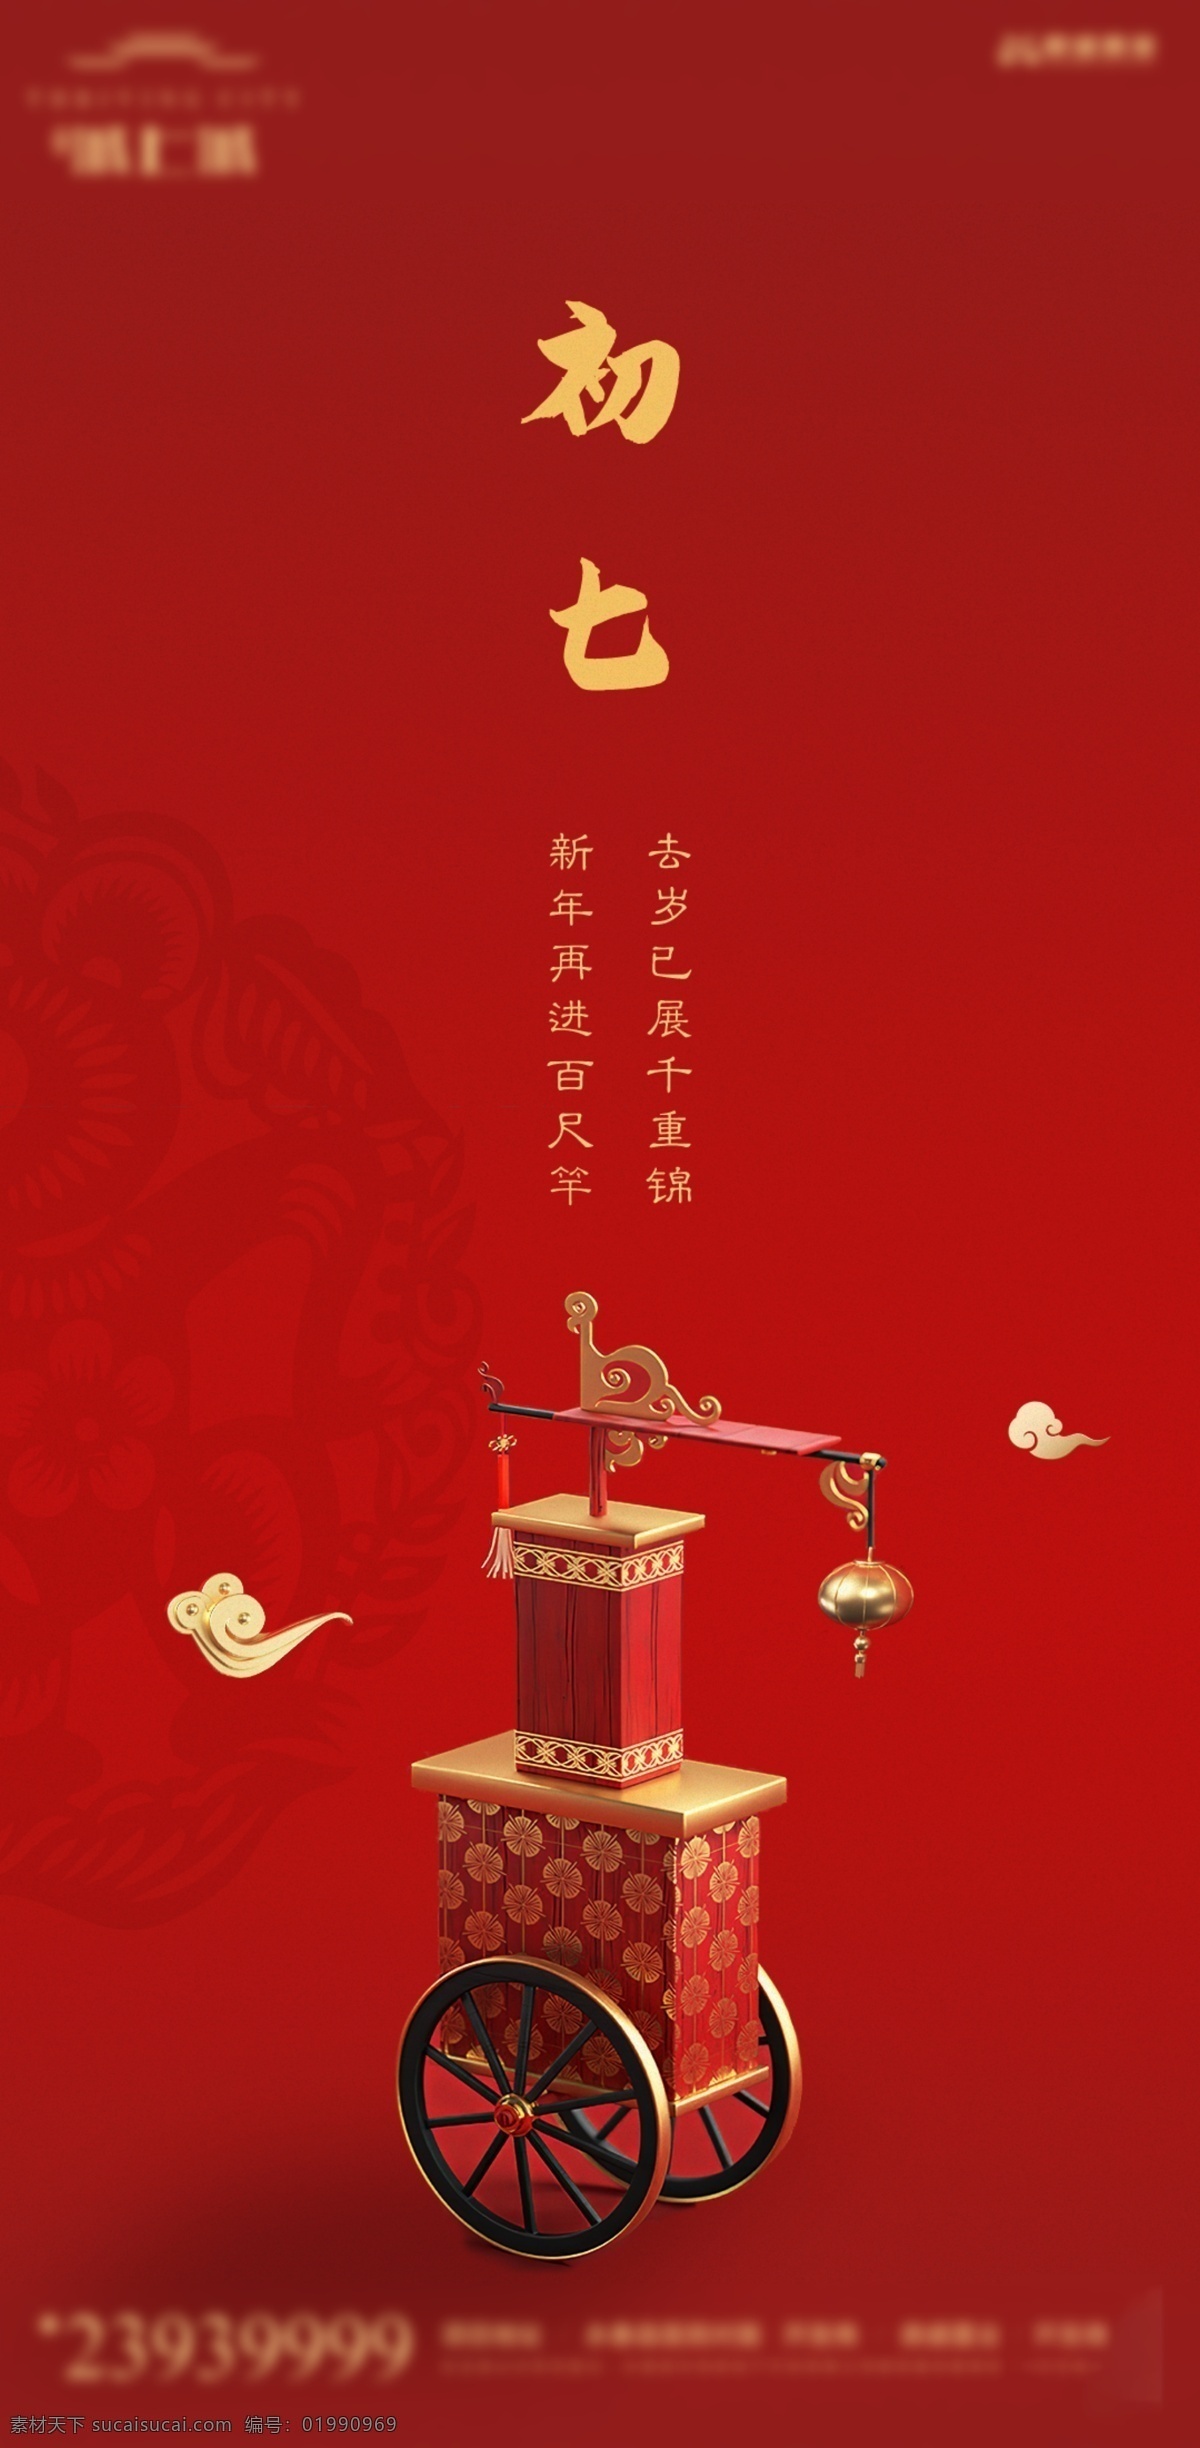 春节系列 初七 春节 新年 红色背景 大年初七 节气 分层